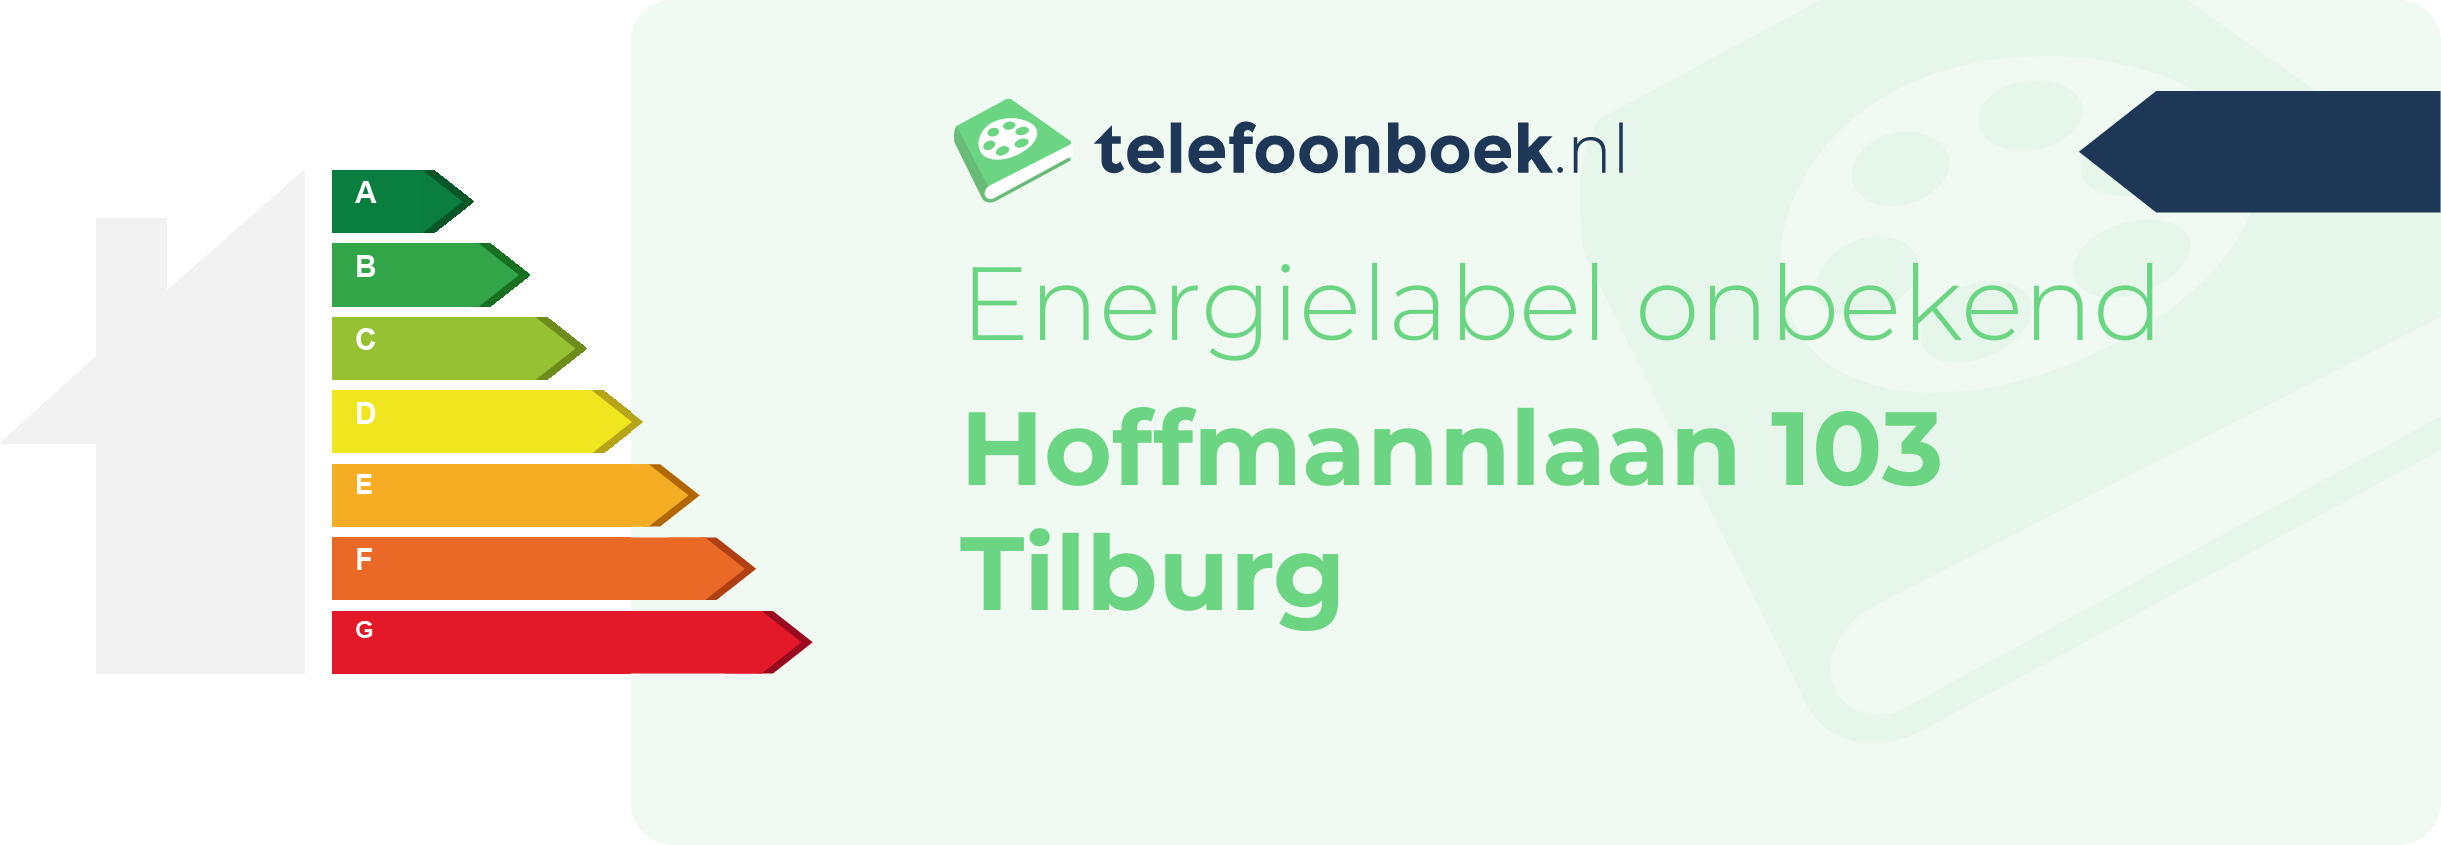 Energielabel Hoffmannlaan 103 Tilburg